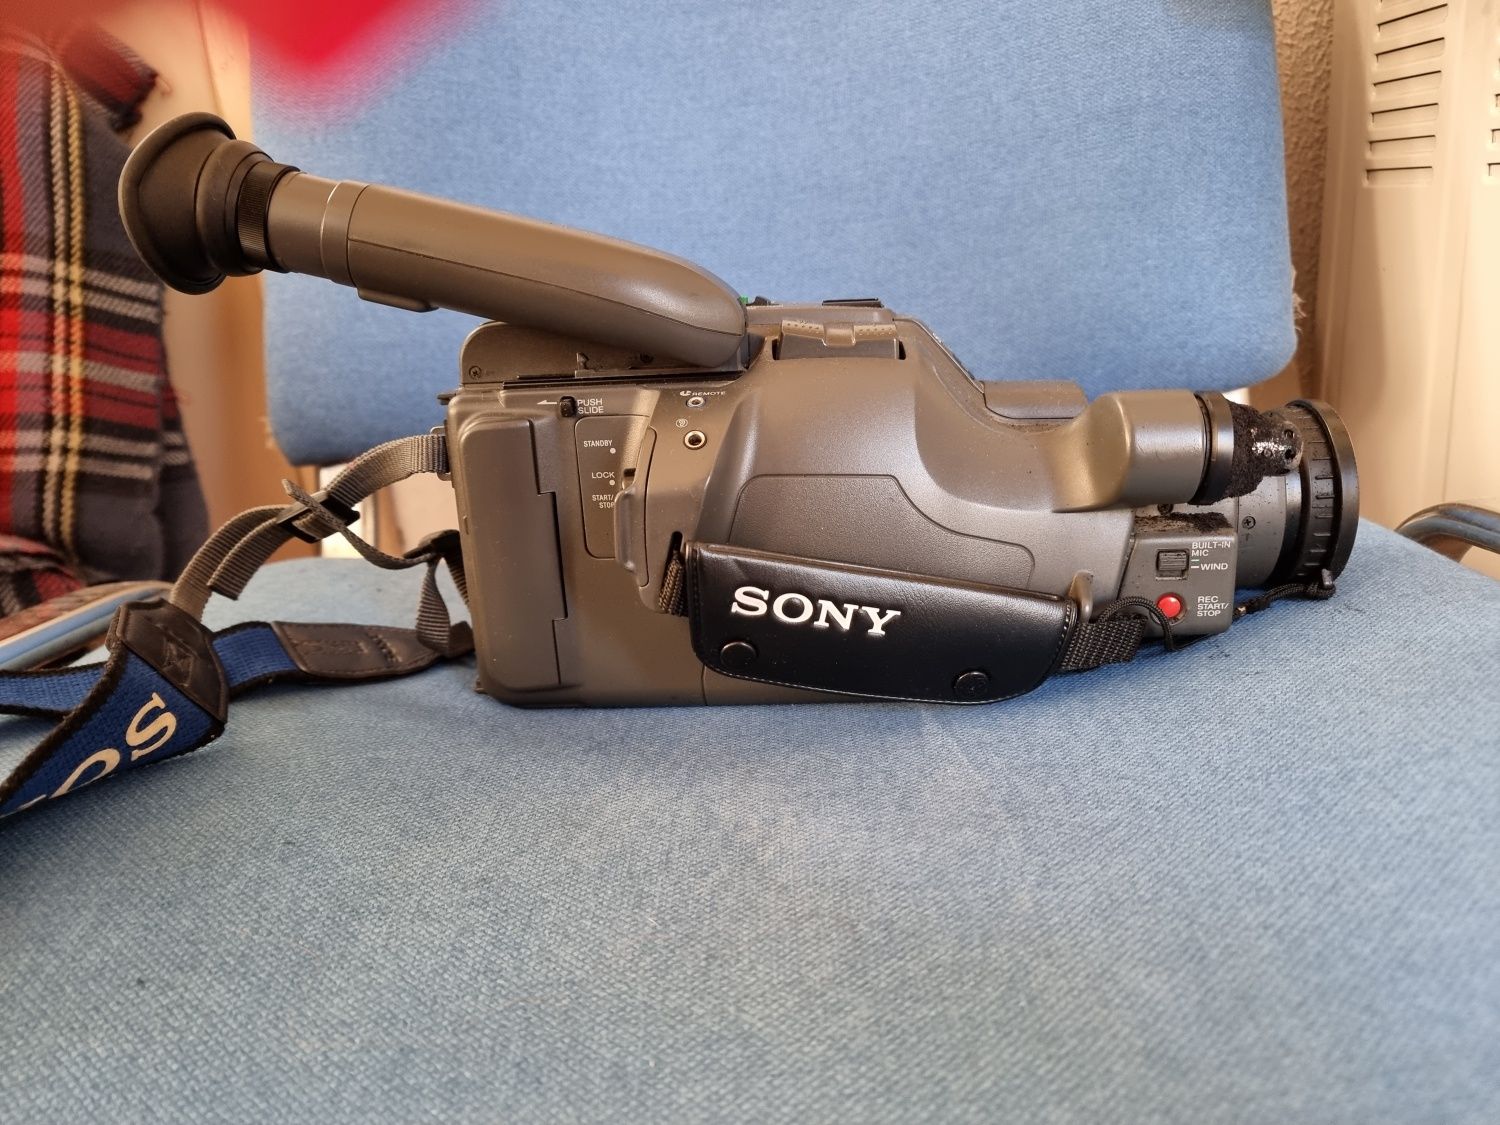 Câmara de filmar Sony de VHS